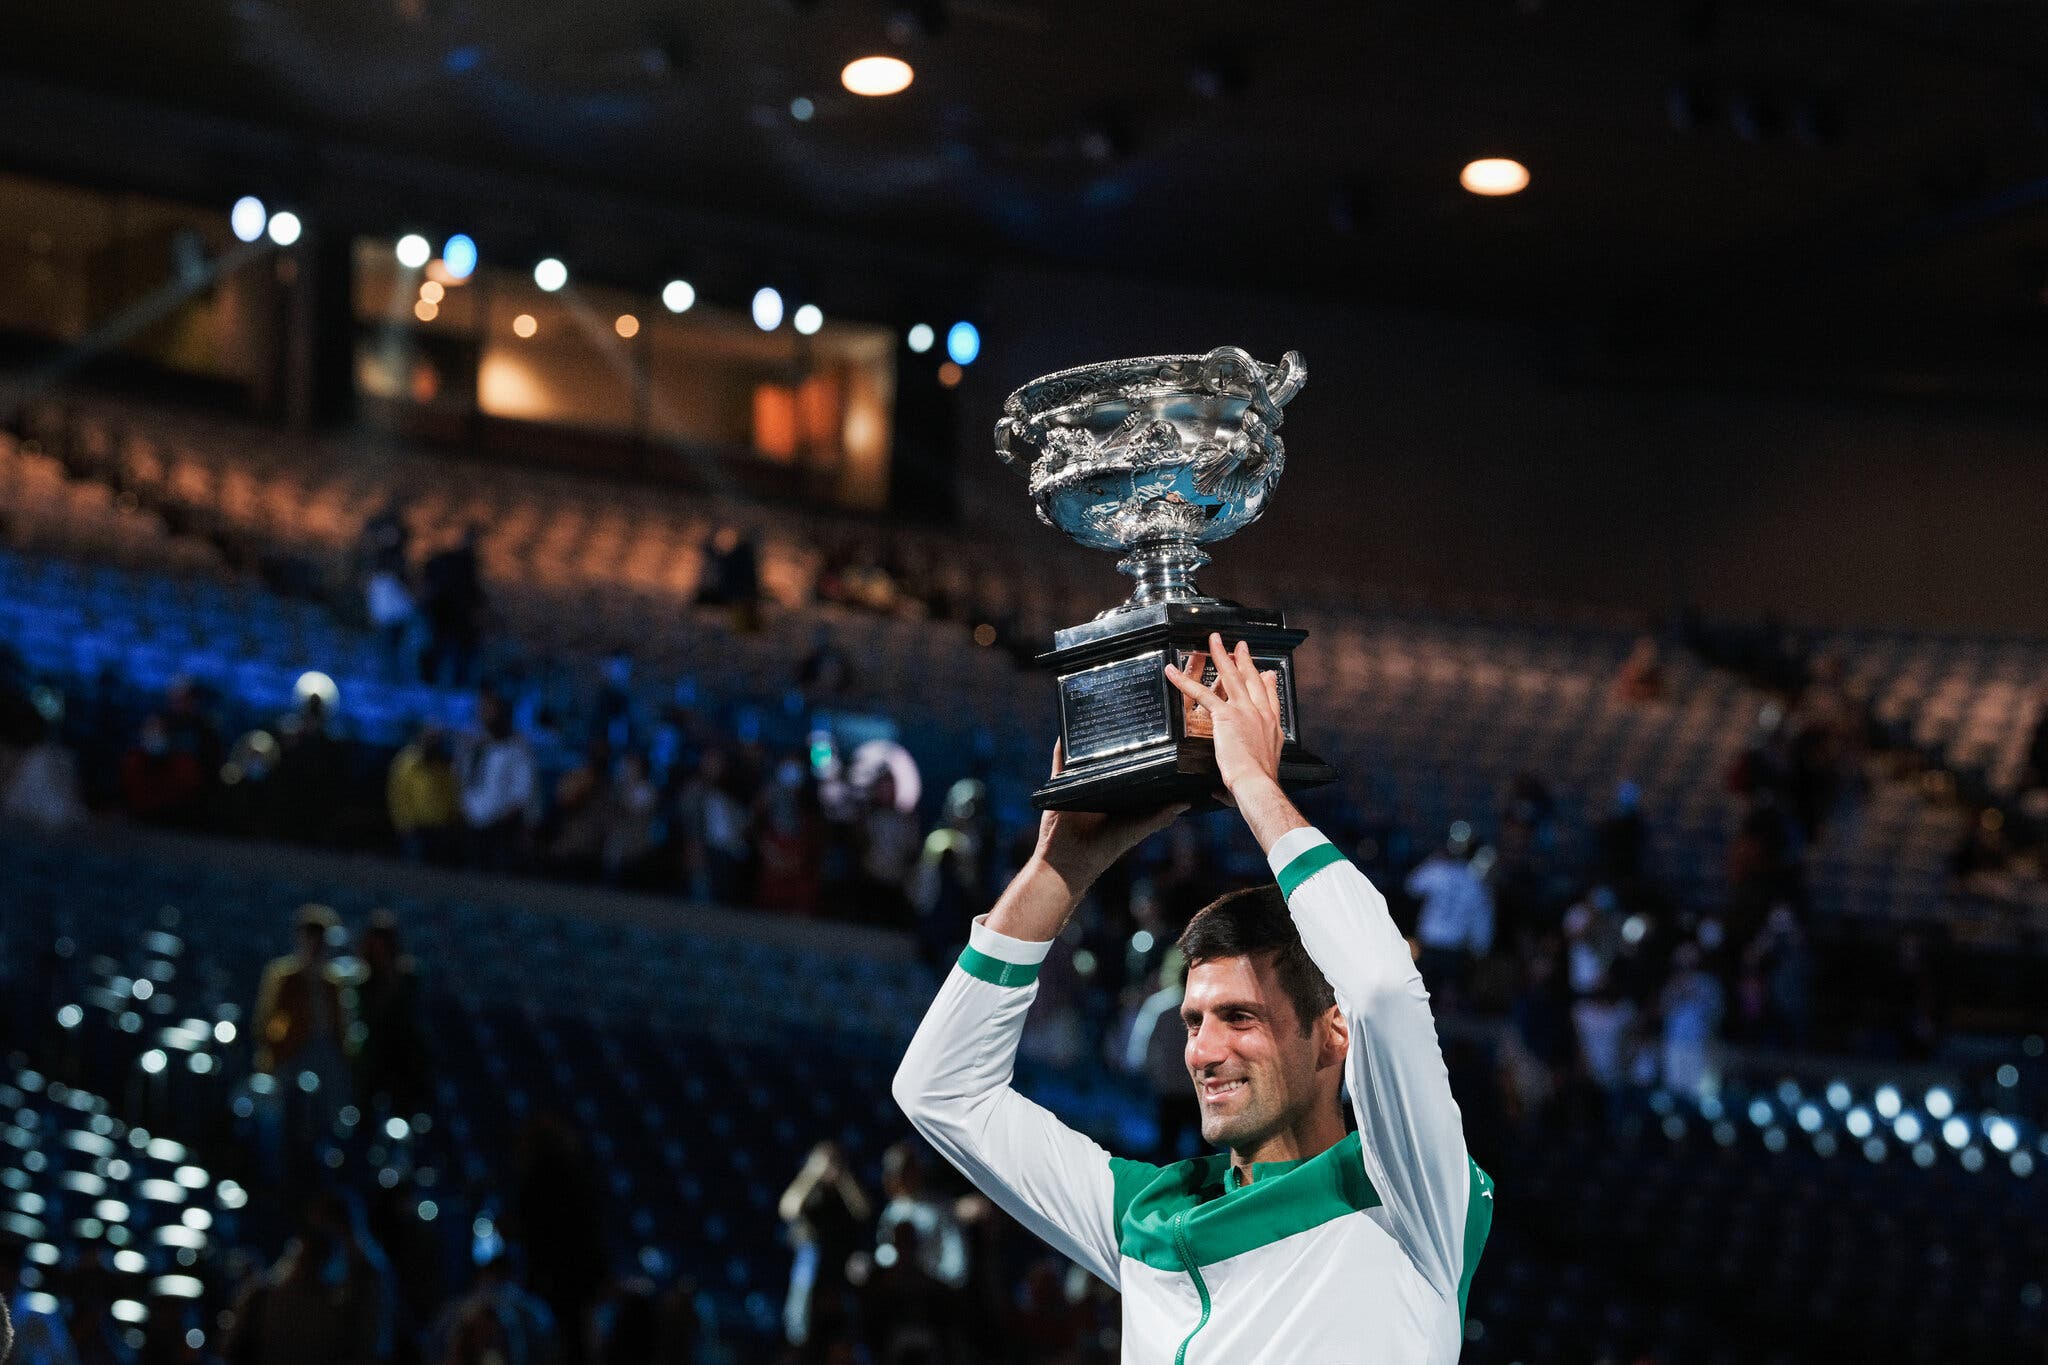 Perjuangan Novak Djokovic Bermain Tenis Bisa Jadi Baru Dimulai